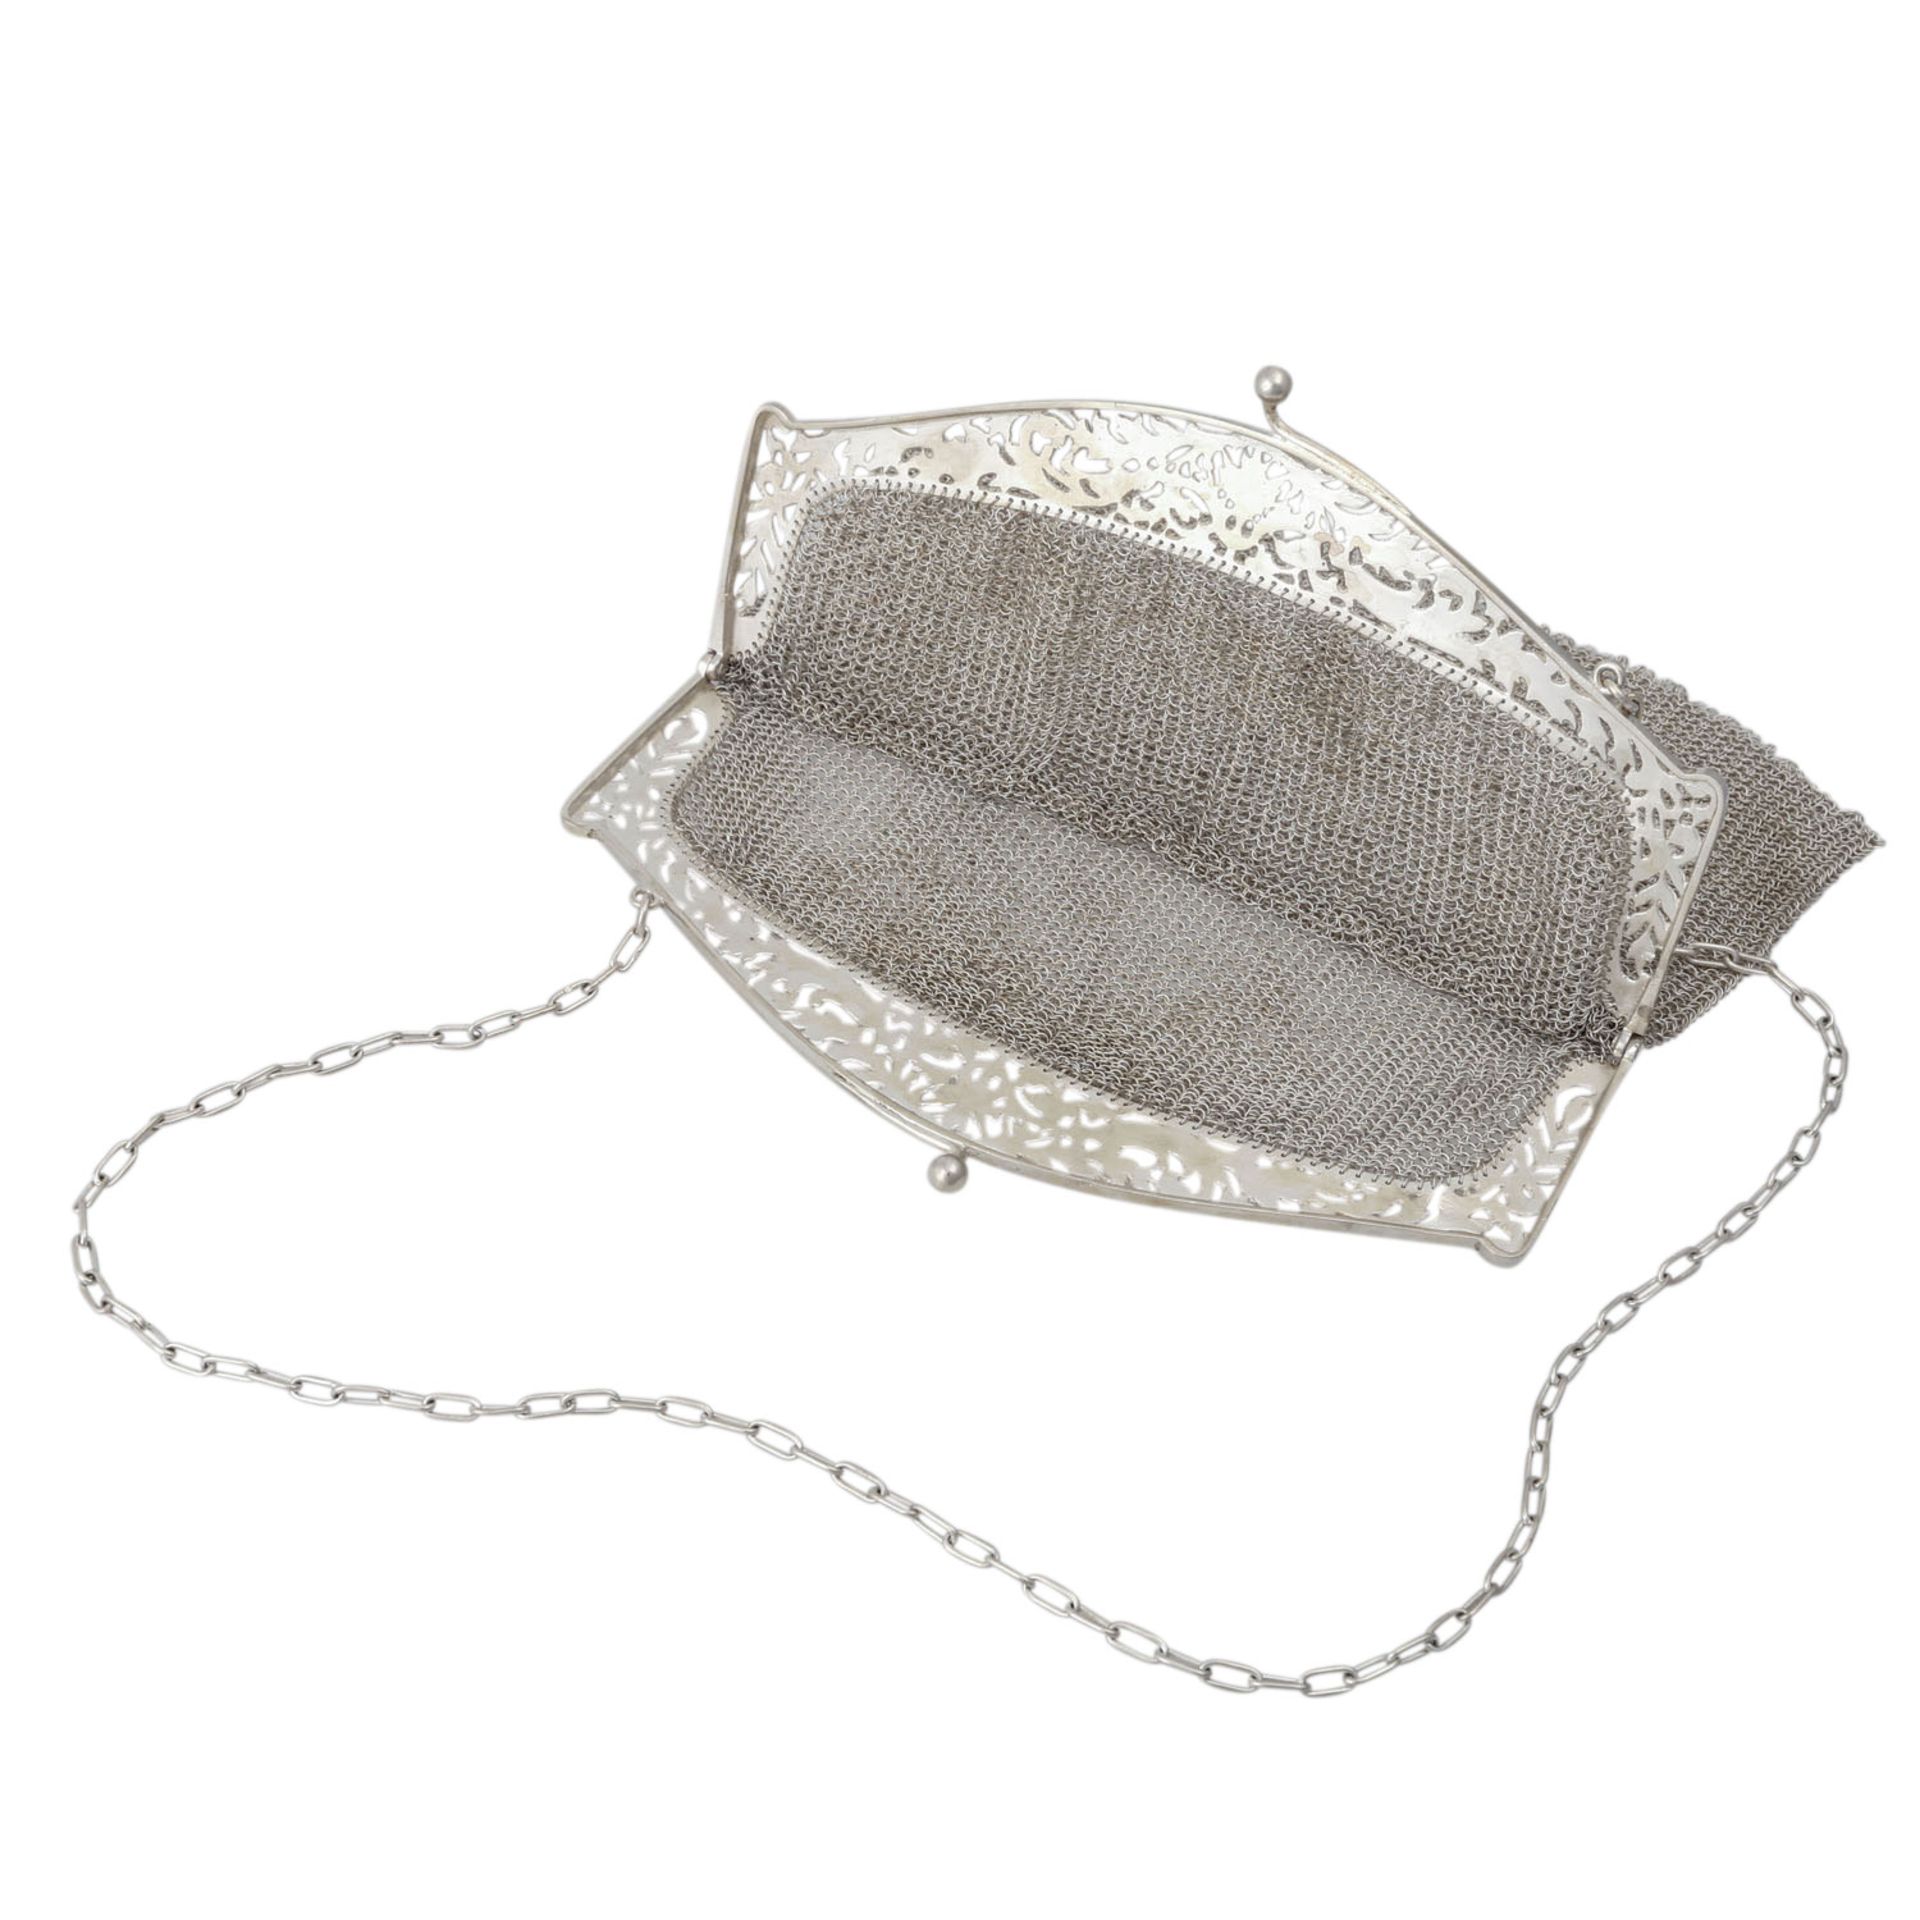 Abendtäschchen aus Silber,Kettengeflecht mit handgraviertem Bügel, 1. H. 20. Jh., Bügel an einer - Bild 4 aus 5